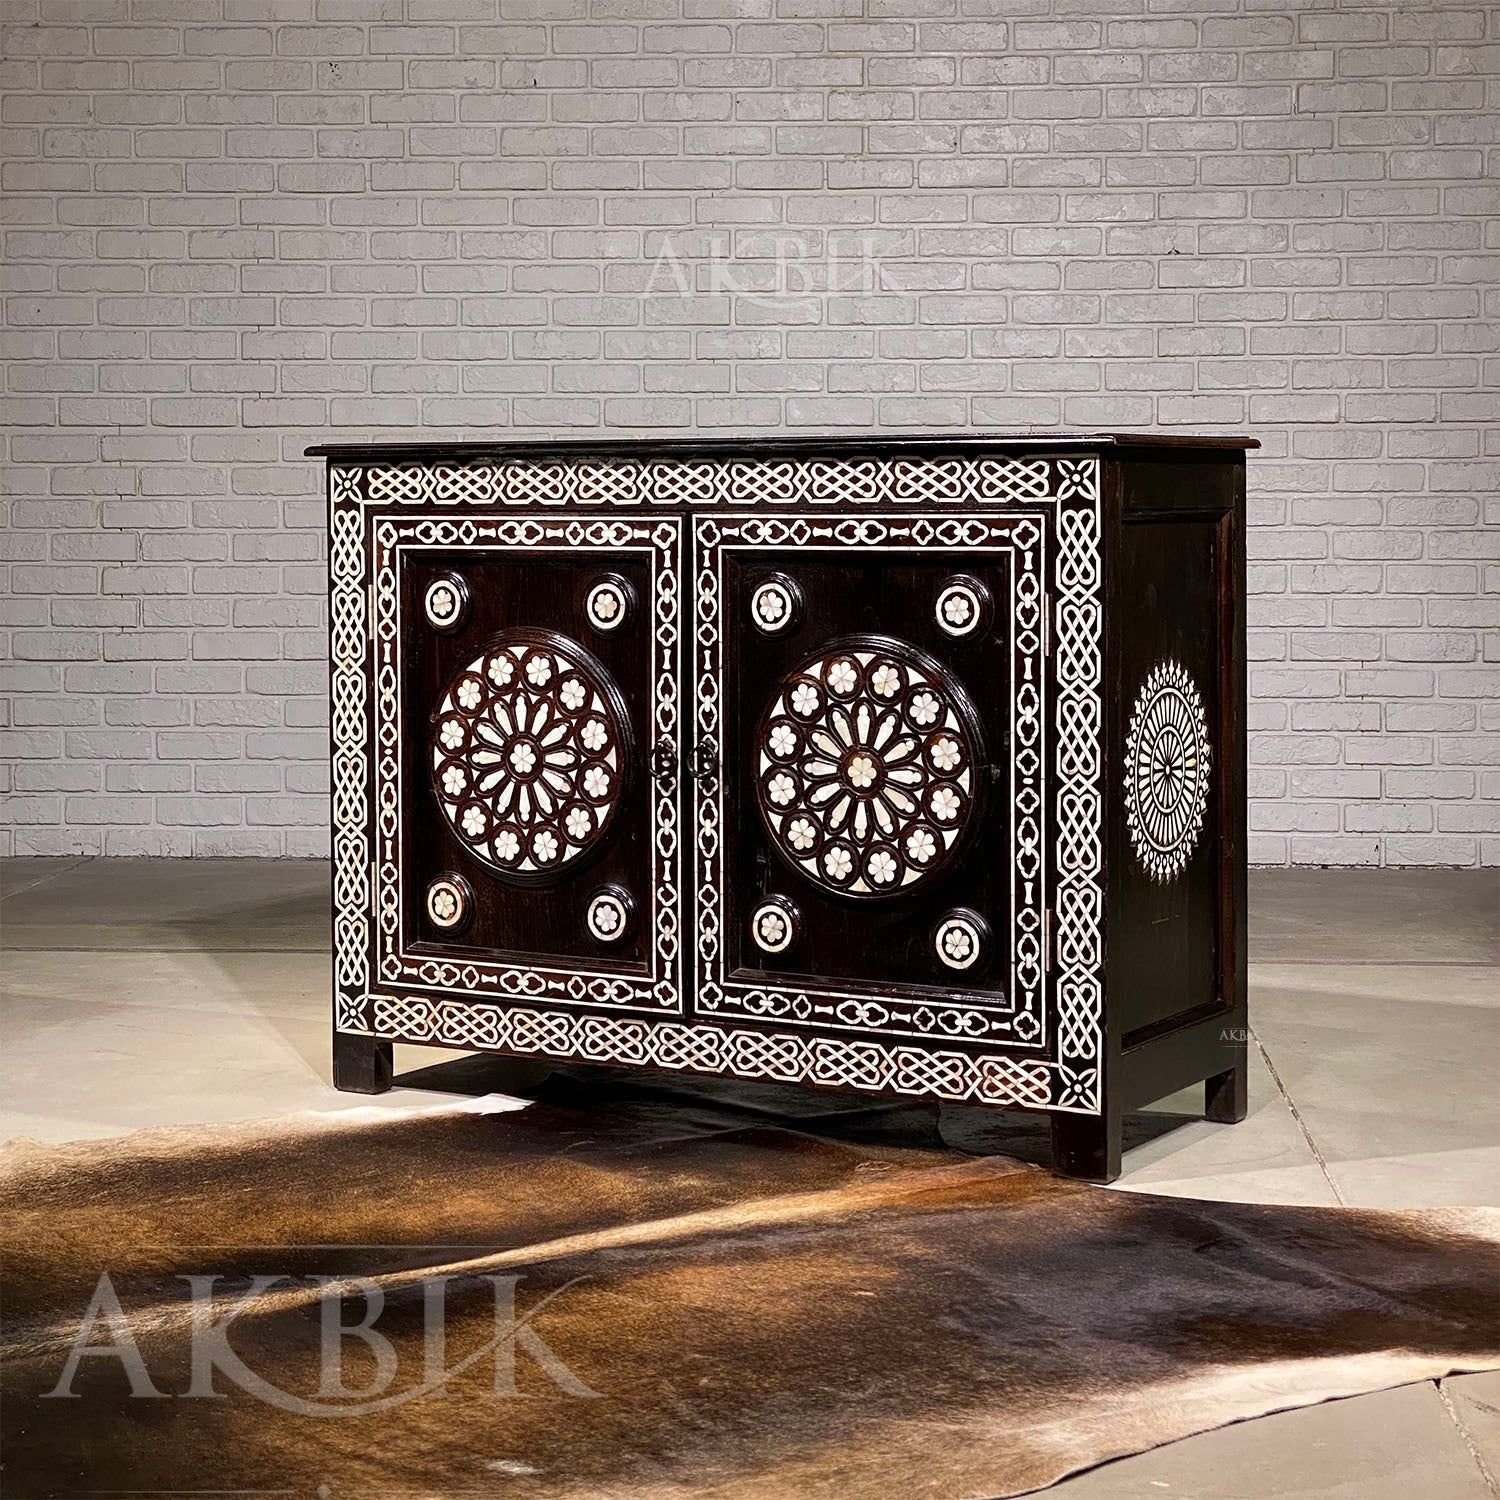 RINGS OF ROSES CABINET - AKBIK Furniture & Design